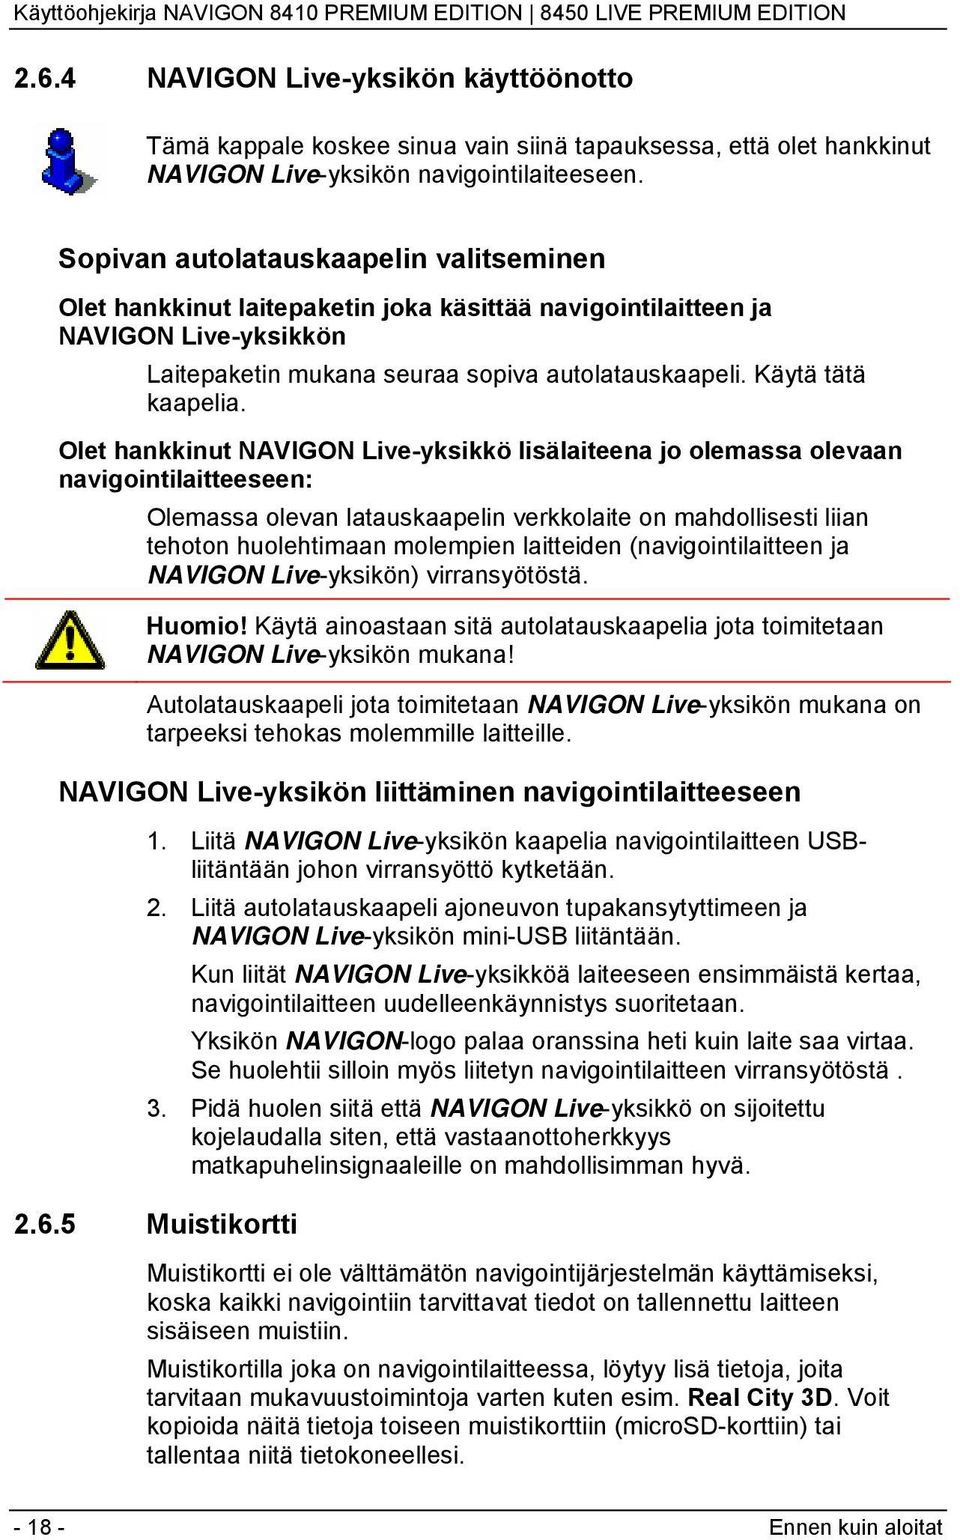 Olet hankkinut NAVIGON Live-yksikkö lisälaiteena jo olemassa olevaan navigointilaitteeseen: Olemassa olevan latauskaapelin verkkolaite on mahdollisesti liian tehoton huolehtimaan molempien laitteiden